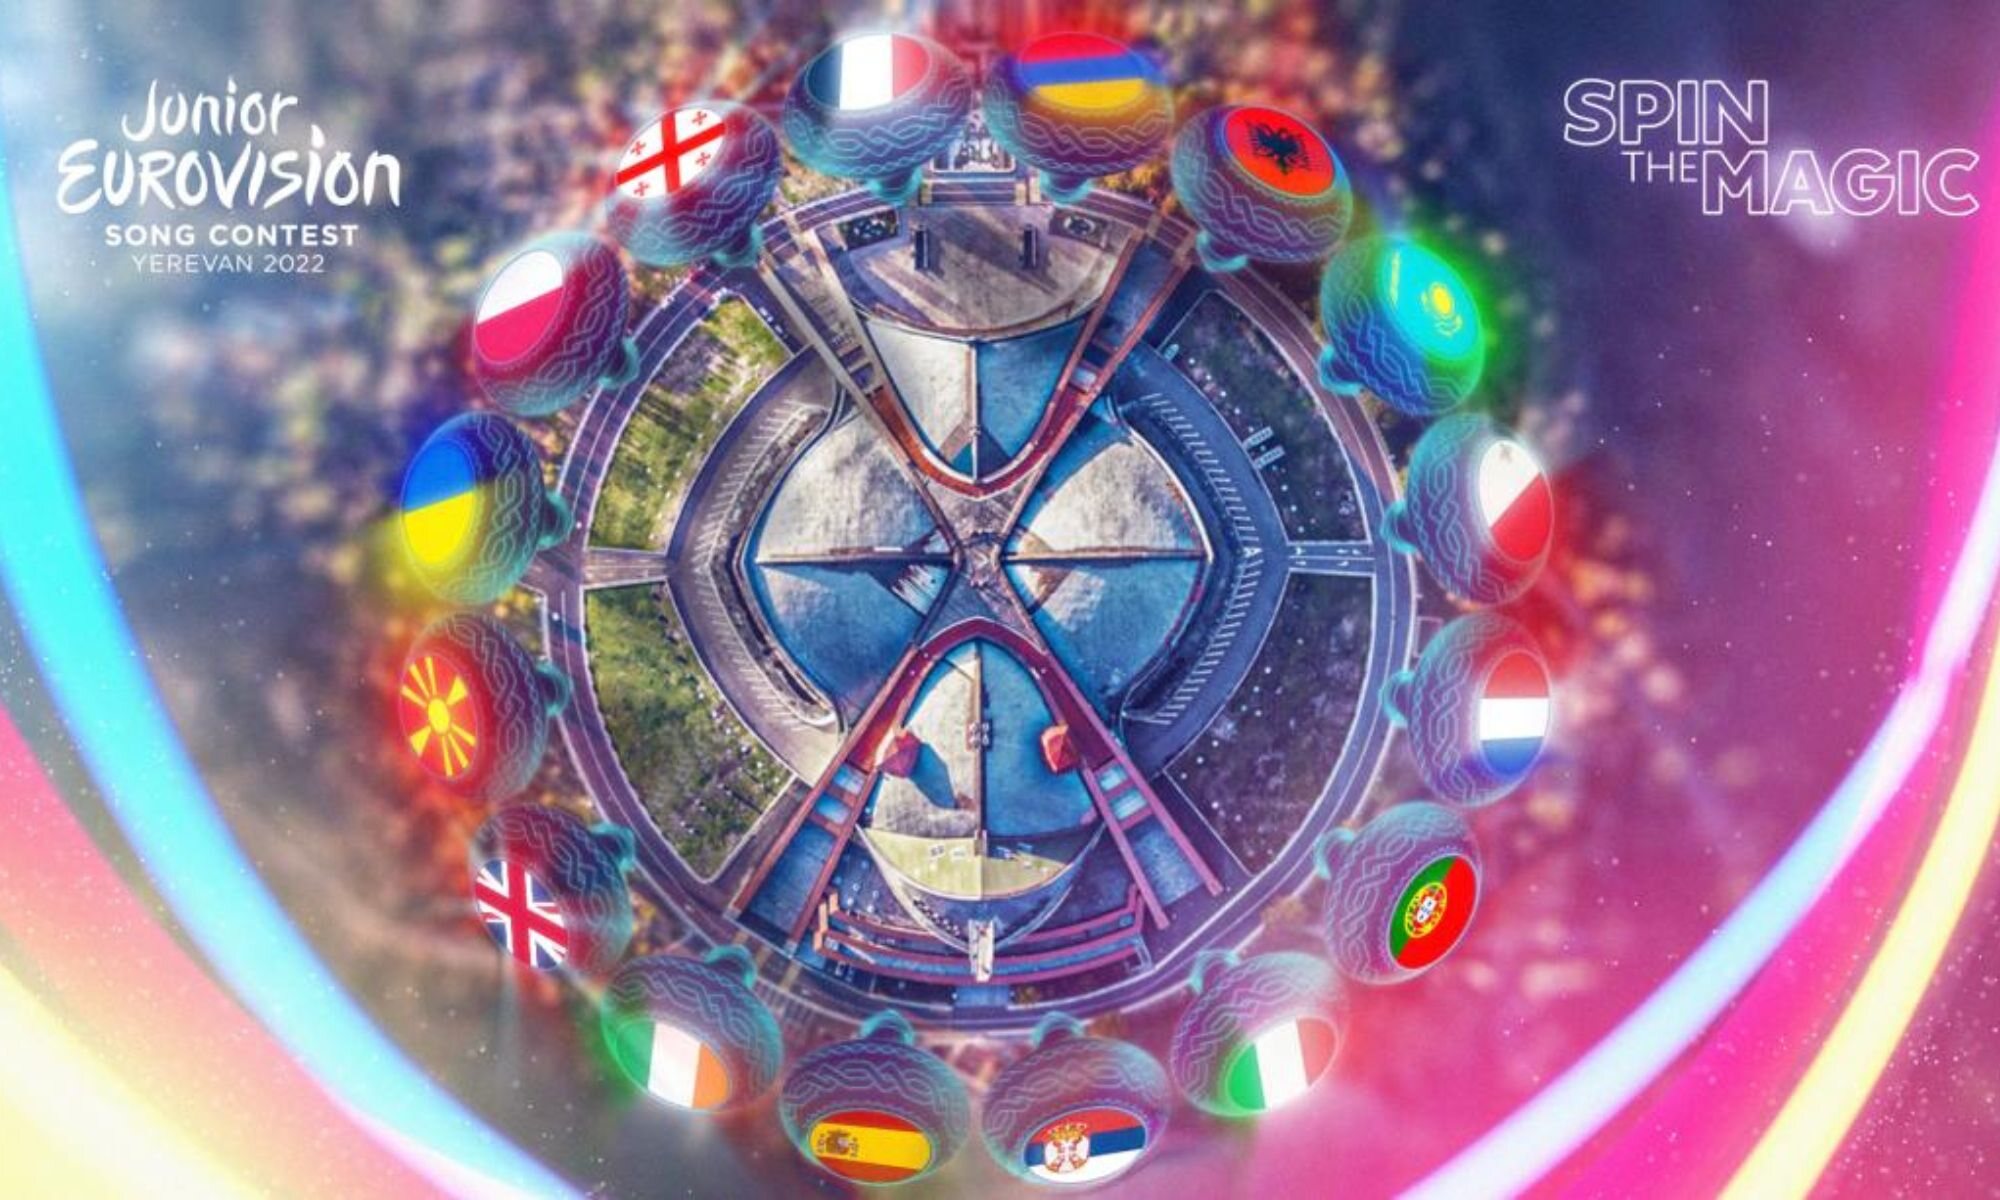 Festival de Eurovisión Junior 2022